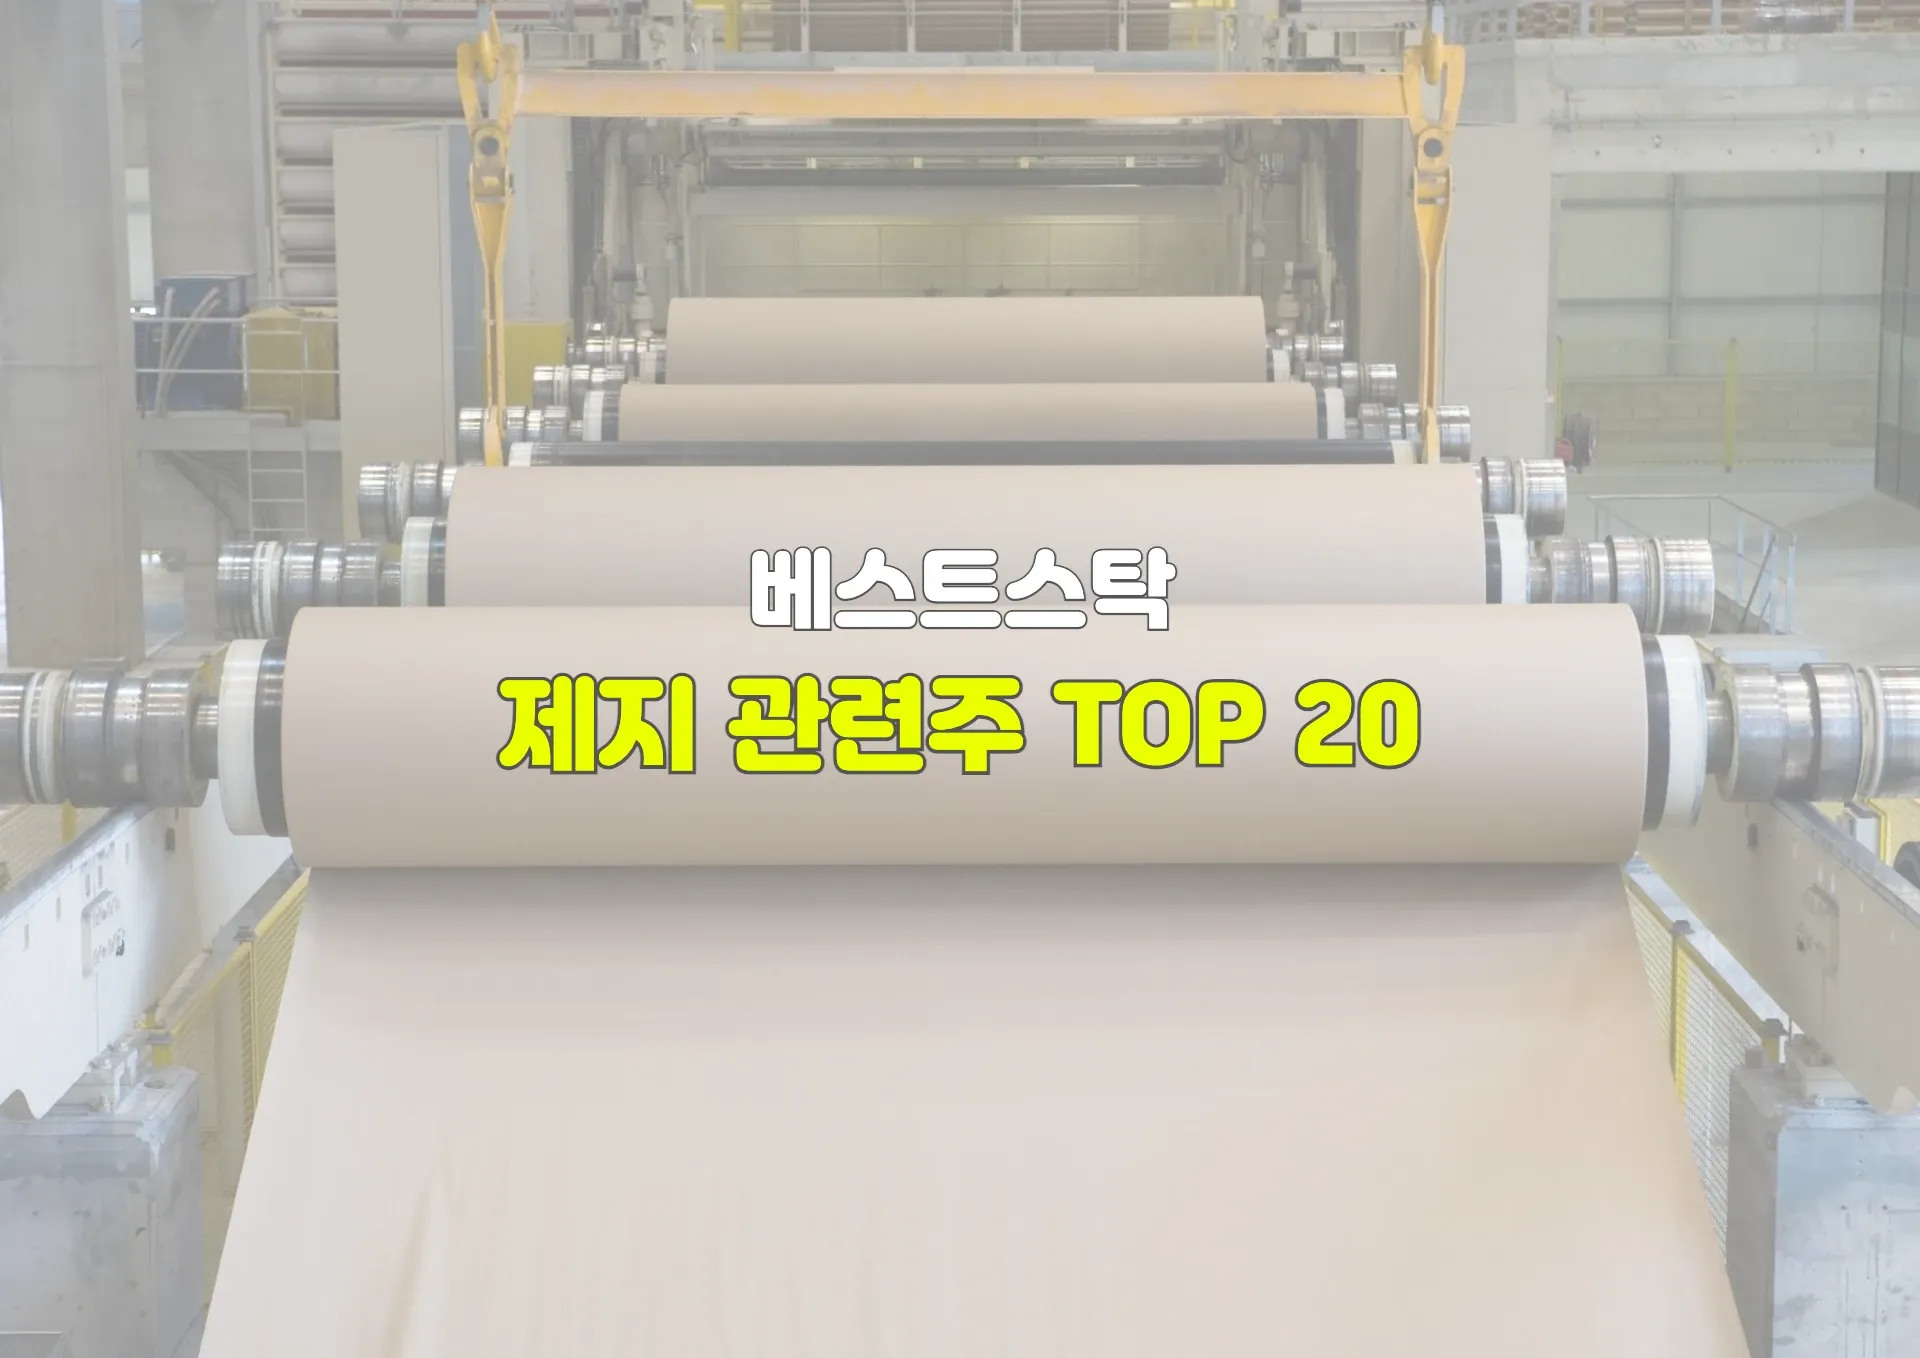 제지 관련주 TOP 20 수혜주, 테마주 정리 썸네일